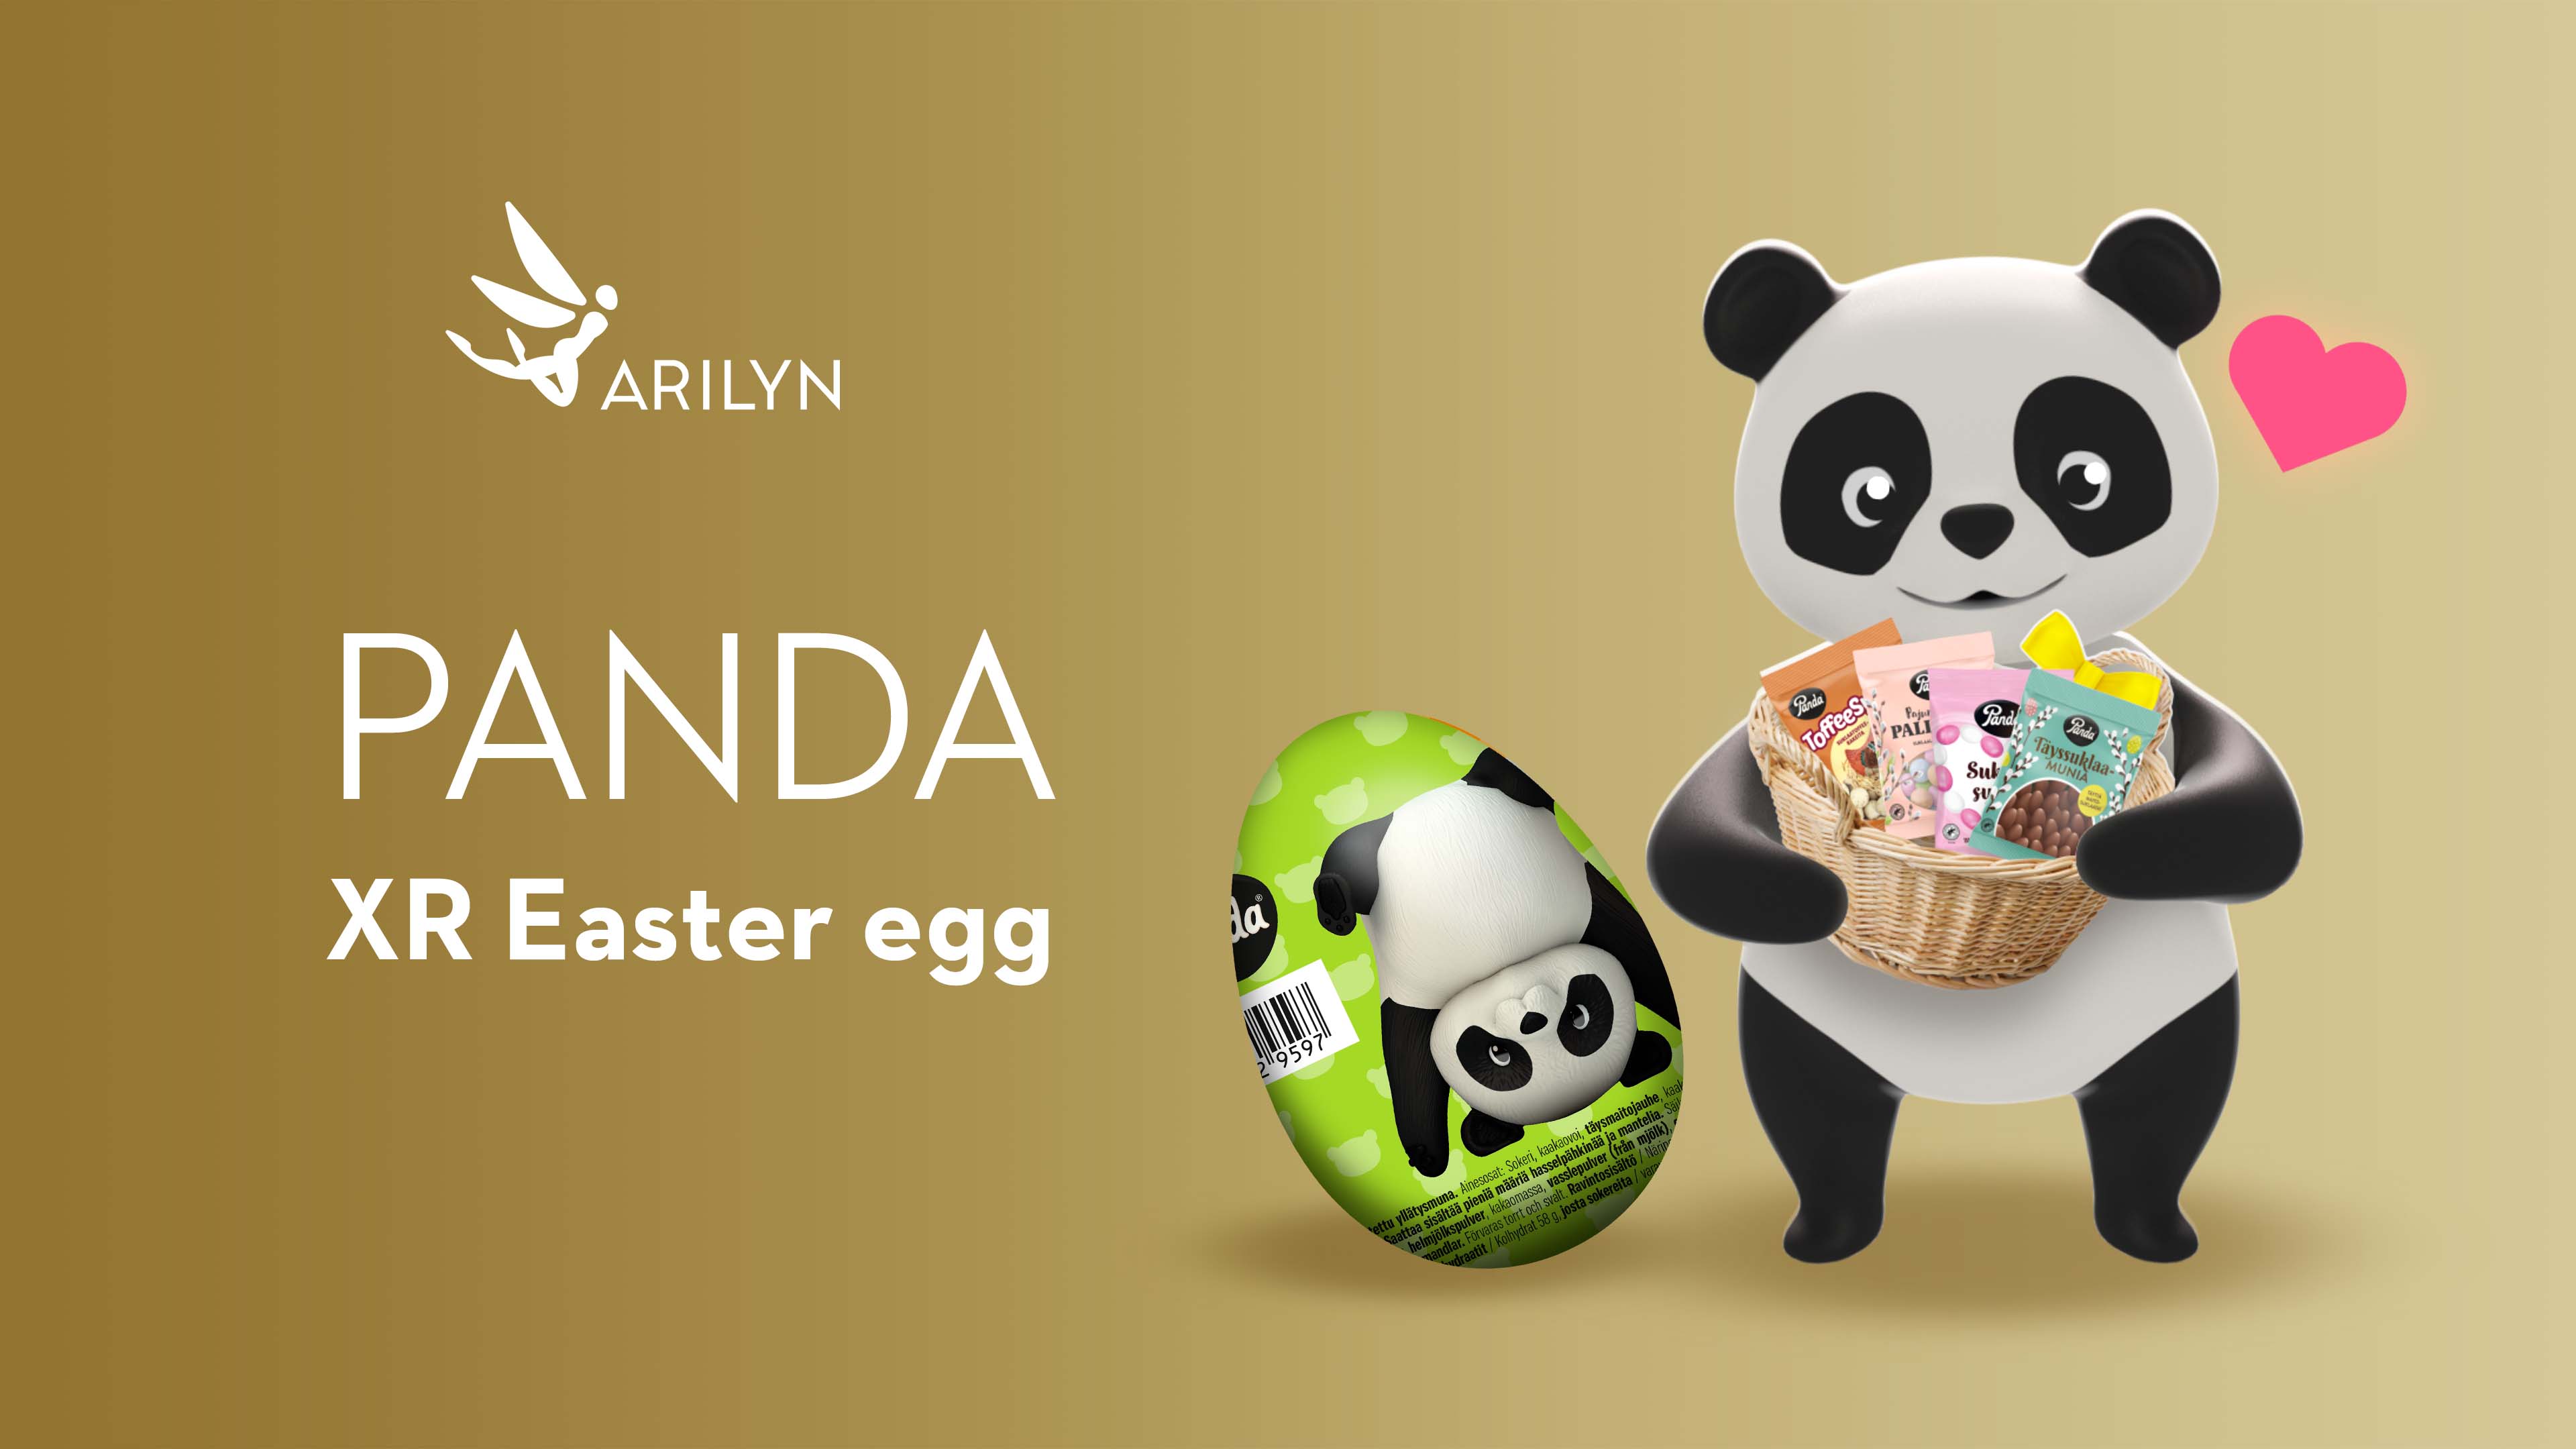 Panda extended Easter egg